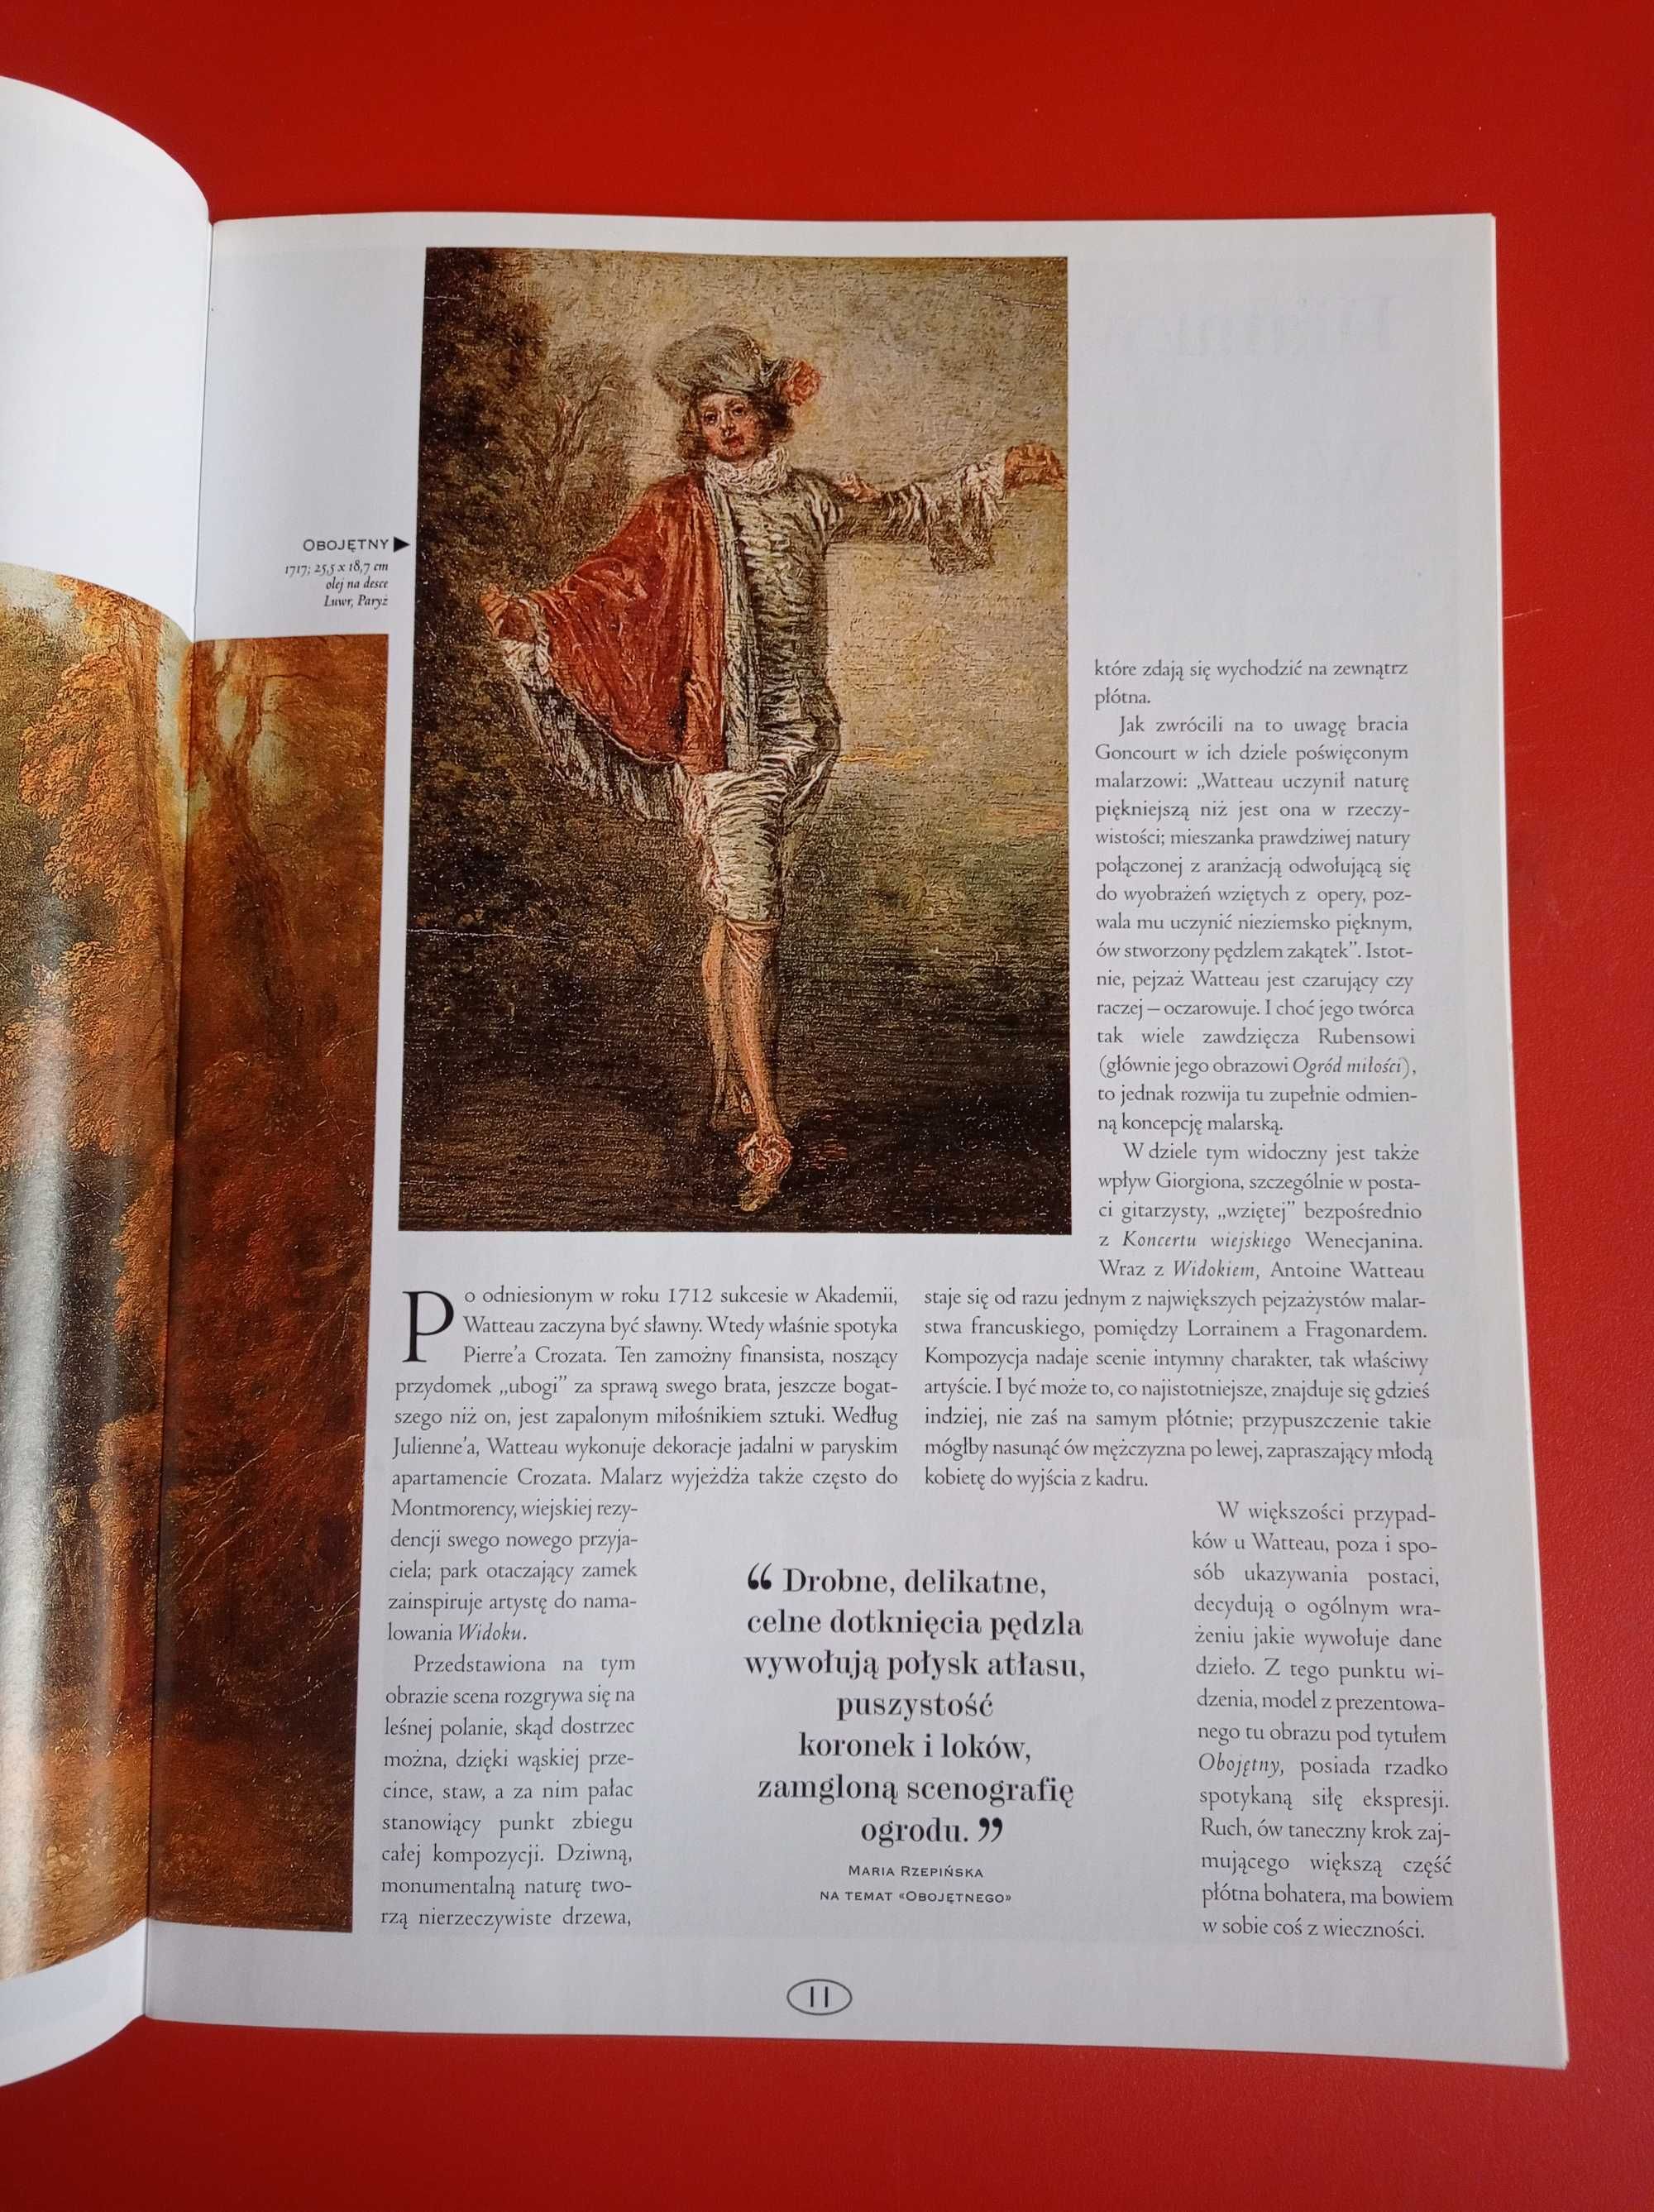 Wielcy malarze nr 80, Antoine Watteau